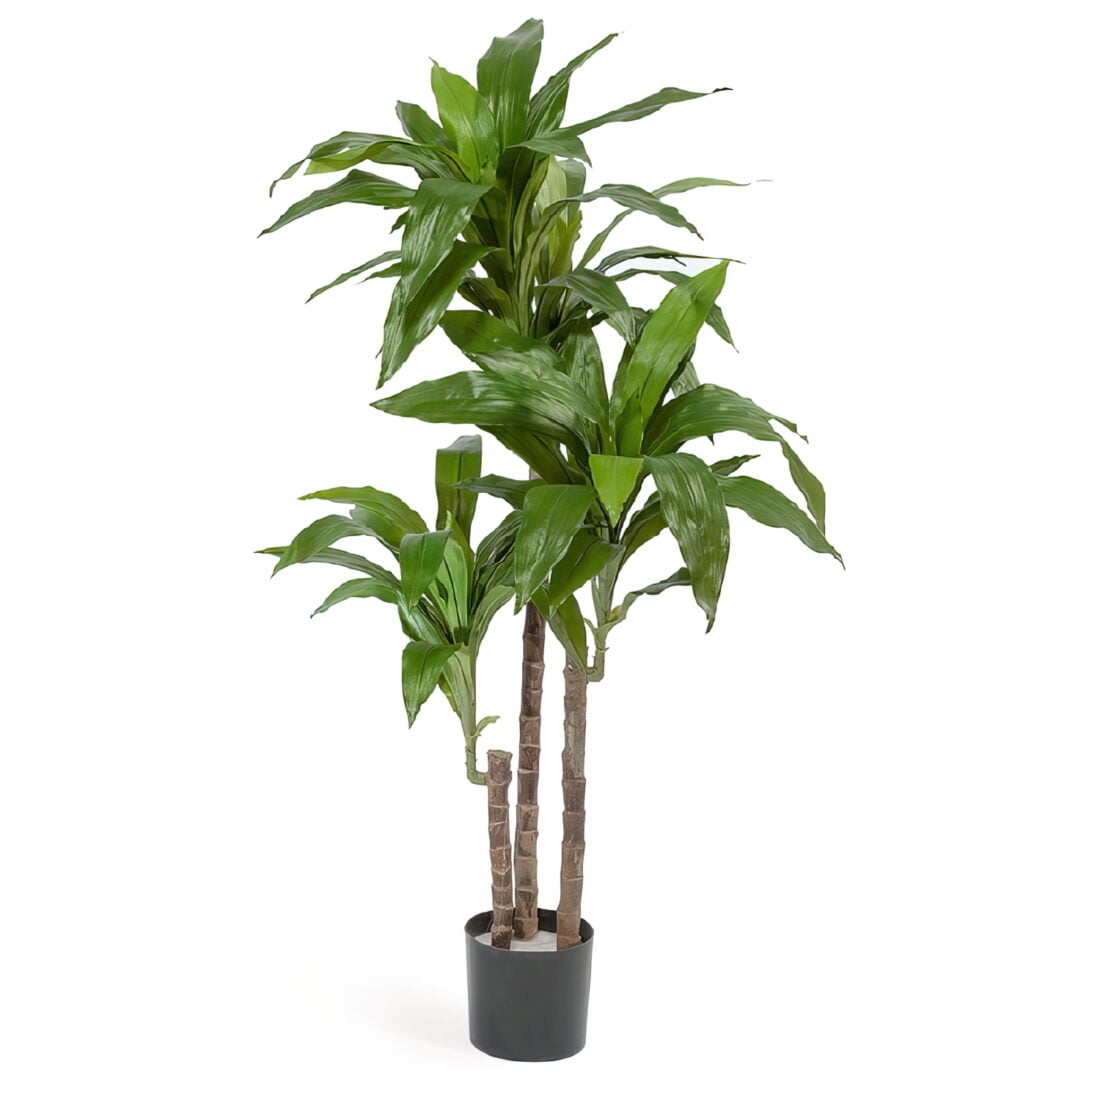 Искусственное растение Драцена Джанет Крейг зеленая, высота 125 см, для напольного кашпо